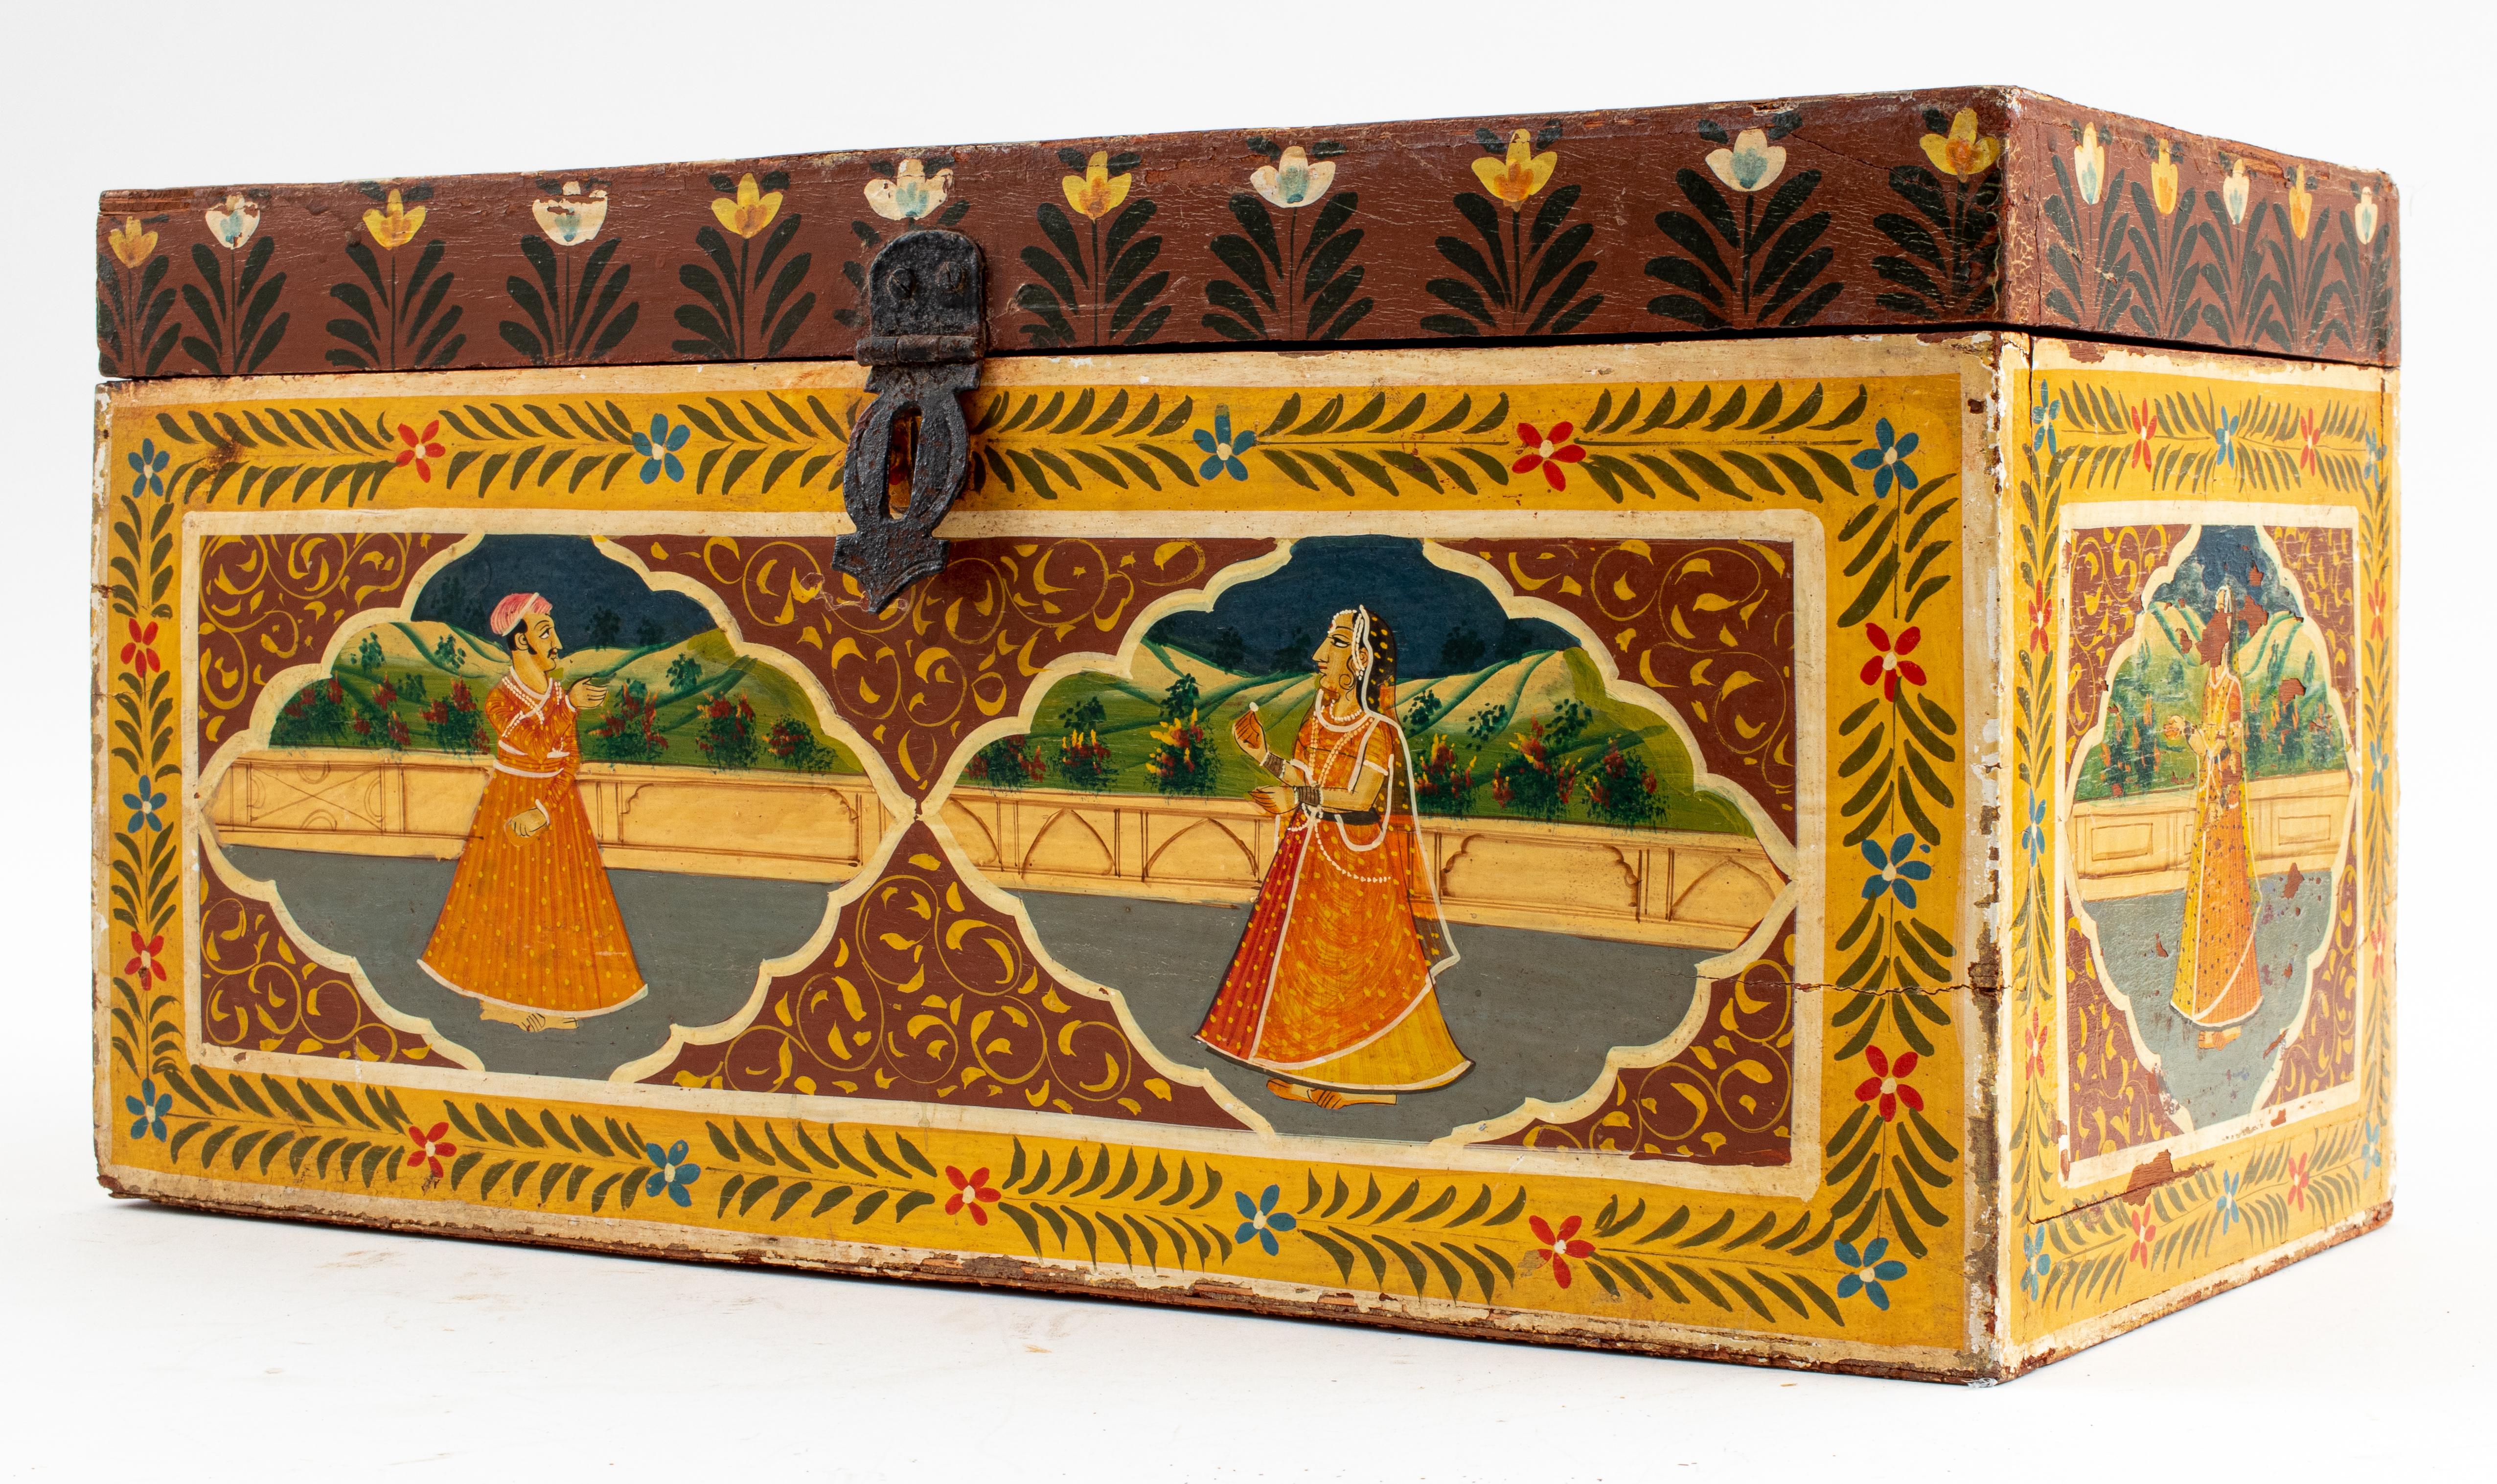 Indische, handbemalte Holztruhe mit Balzszene.
Maße: 8,75